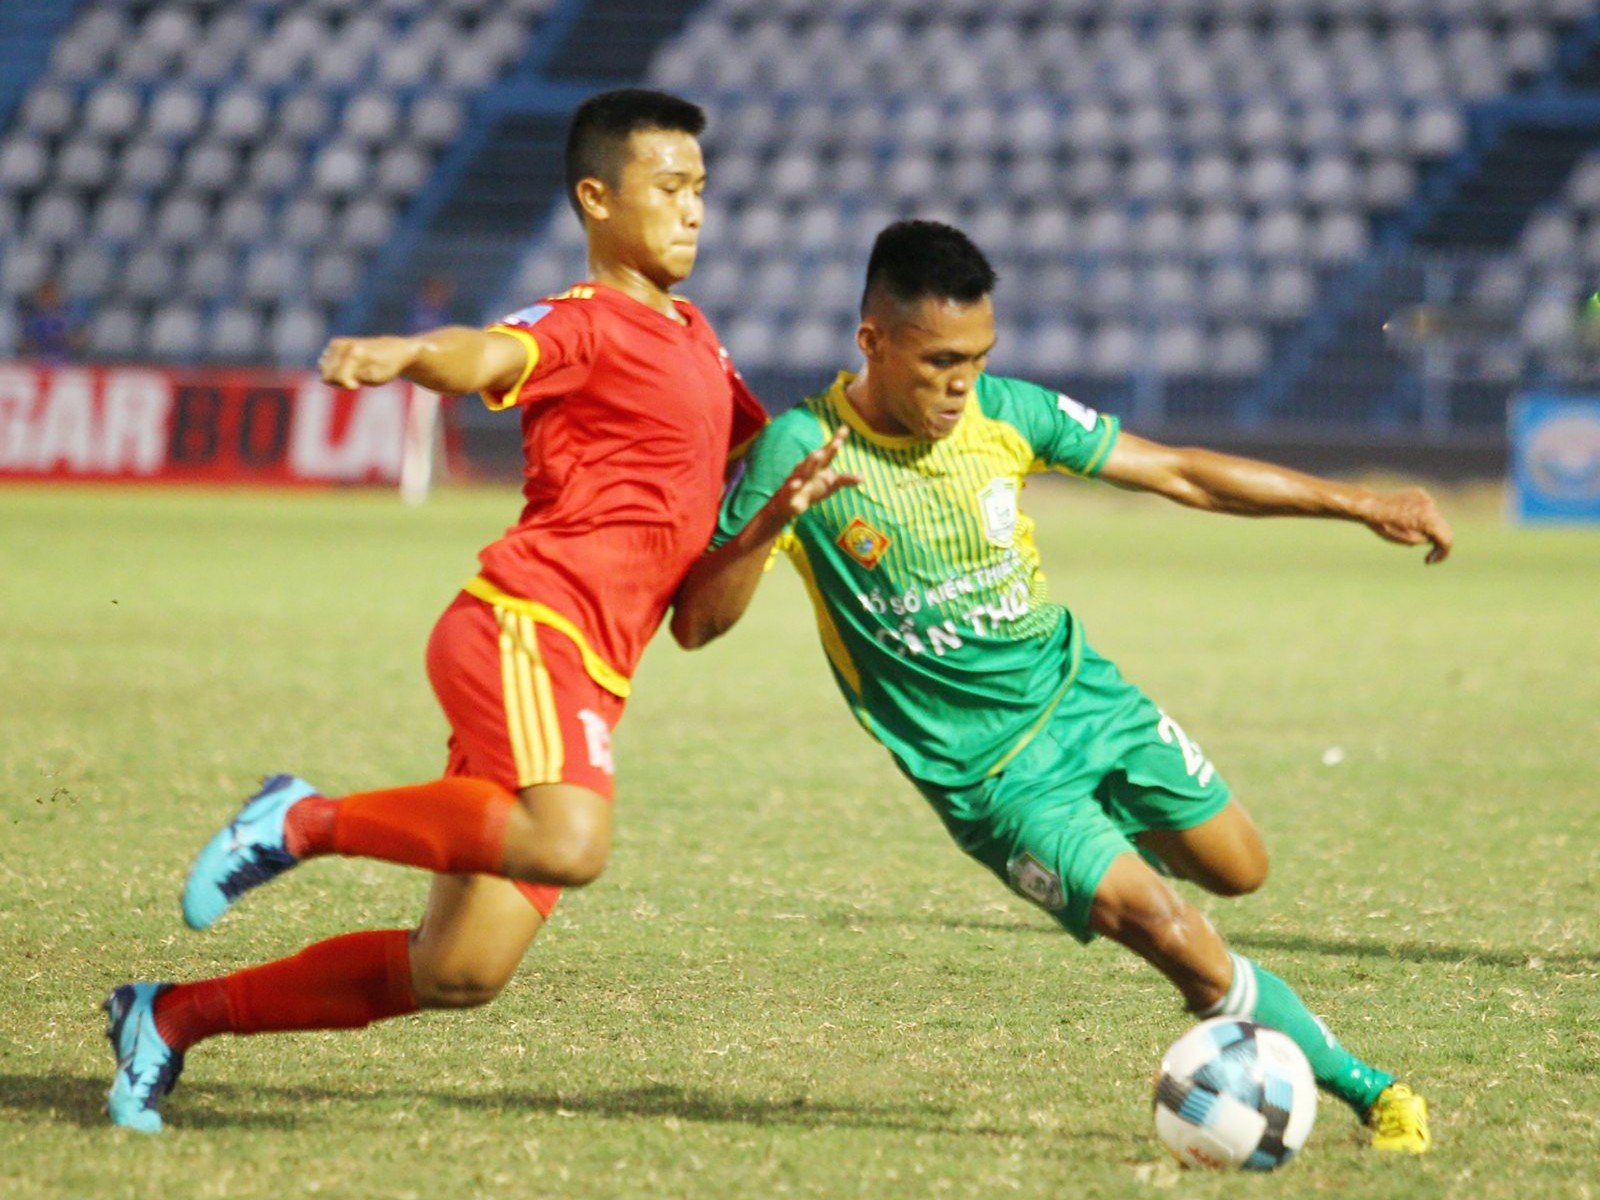 Cầu thủ Cần Thơ (phải) bỏ lỡ nhiều cơ hội trong trận đấu gặp Bình Định trên sân Cần Thơ ở vòng 2. Ảnh: NGUYỄN MINH